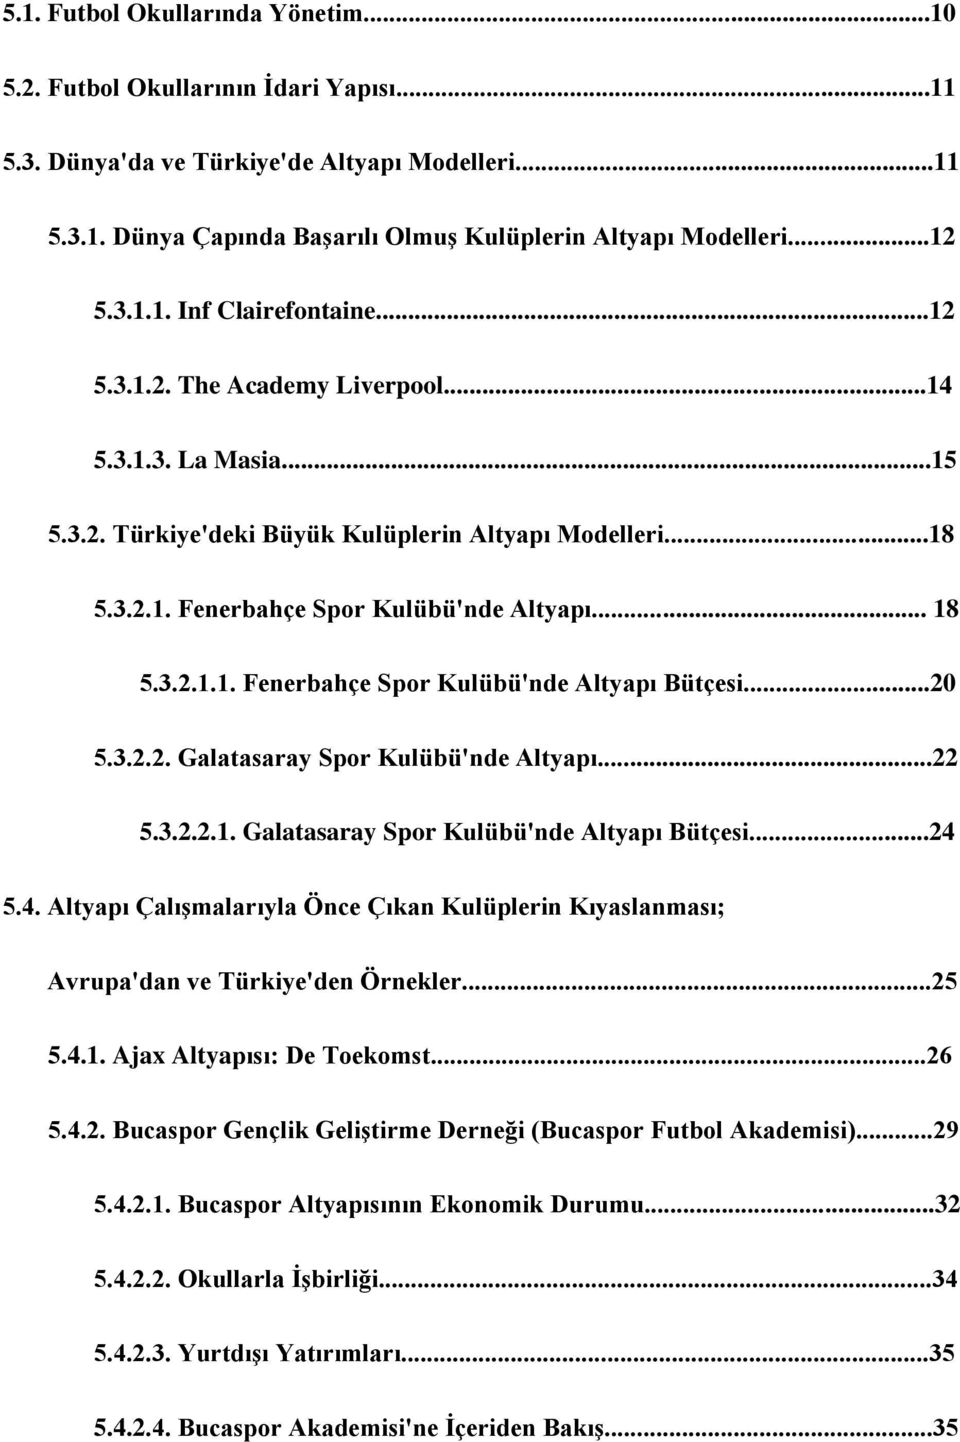 3.2.1.1. Fenerbahçe Spor Kulübü'nde Altyapı Bütçesi...20 5.3.2.2. Galatasaray Spor Kulübü'nde Altyapı...22 5.3.2.2.1. Galatasaray Spor Kulübü'nde Altyapı Bütçesi...24 